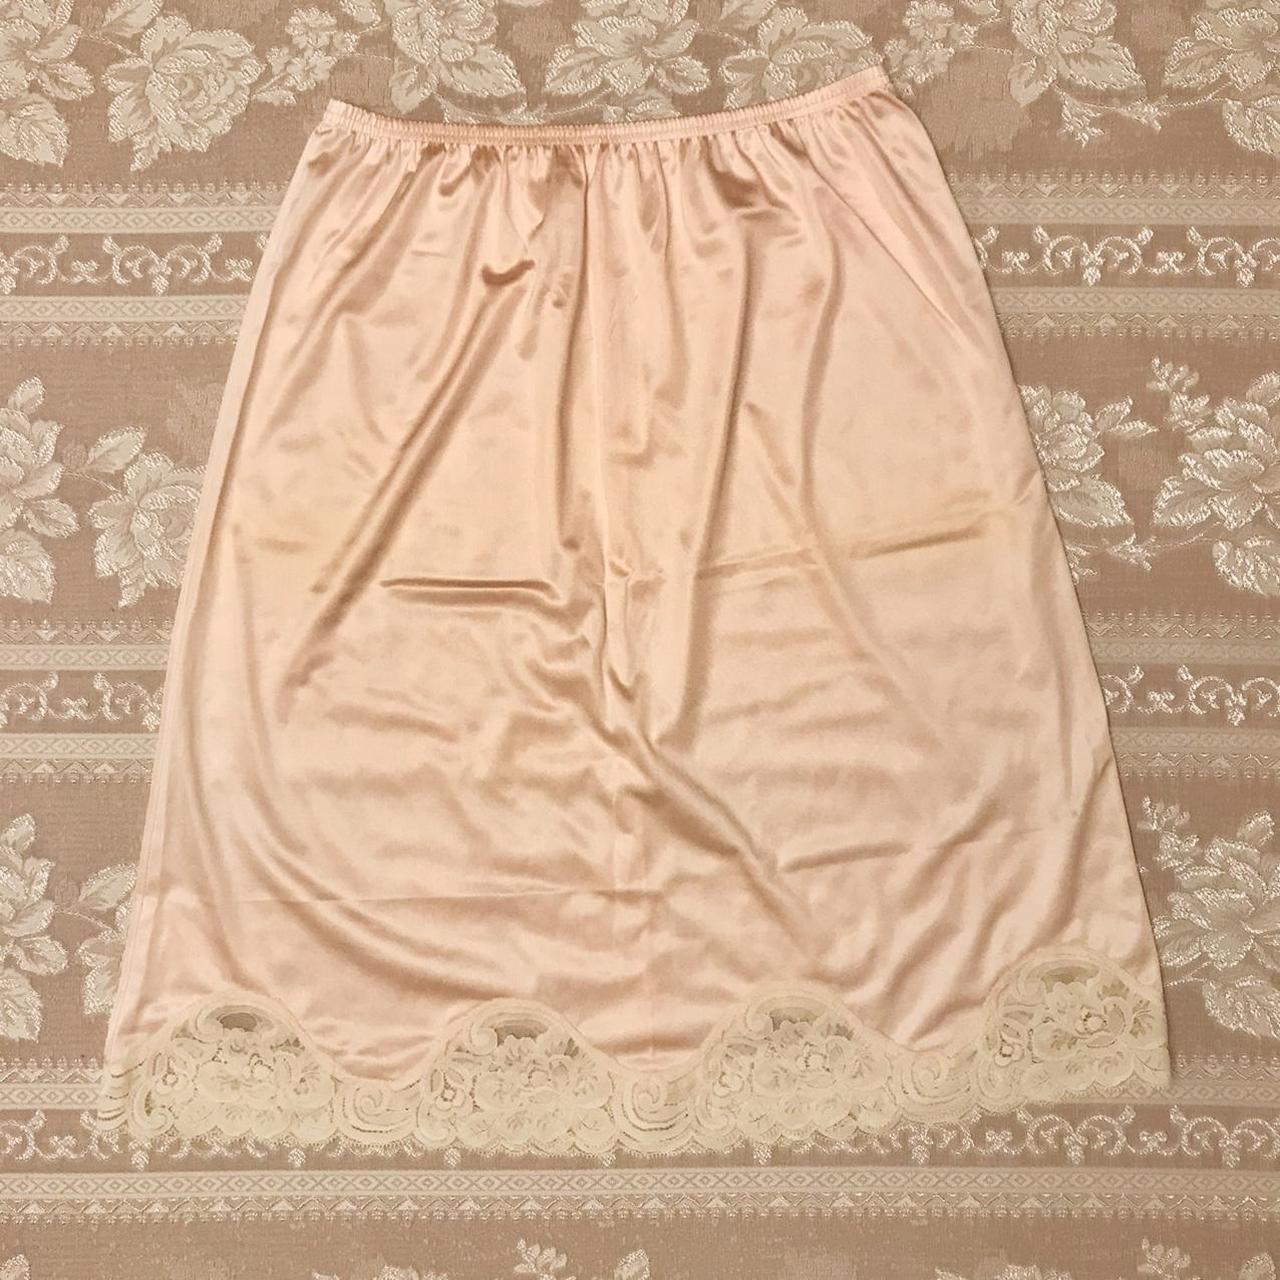 Cream slip skirt~ Made with nylon fabric, very - Depop